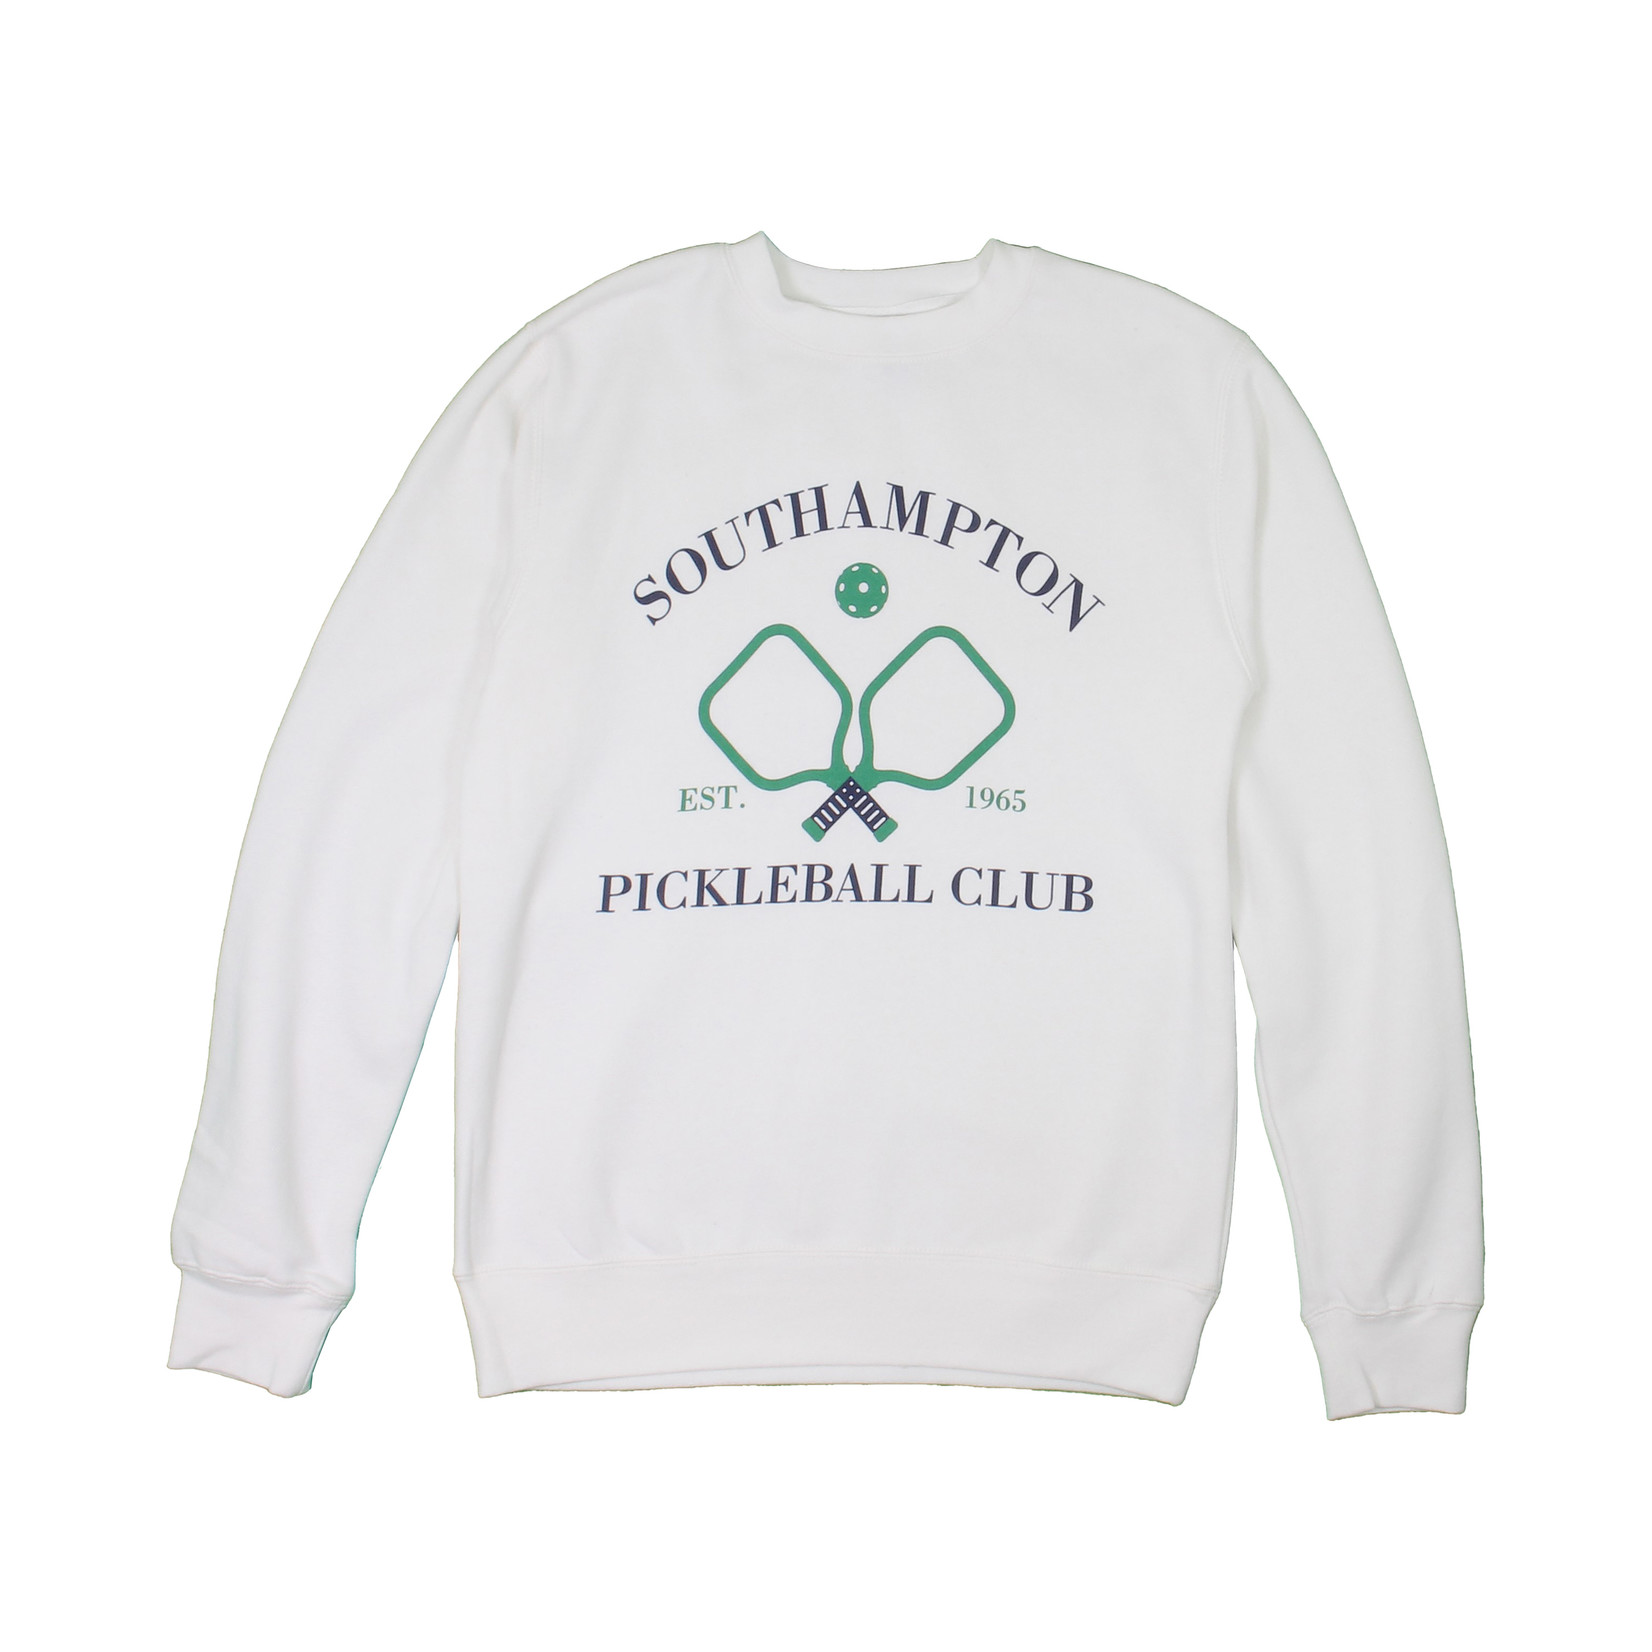 Southampton Pickleball Club Sweatshirt